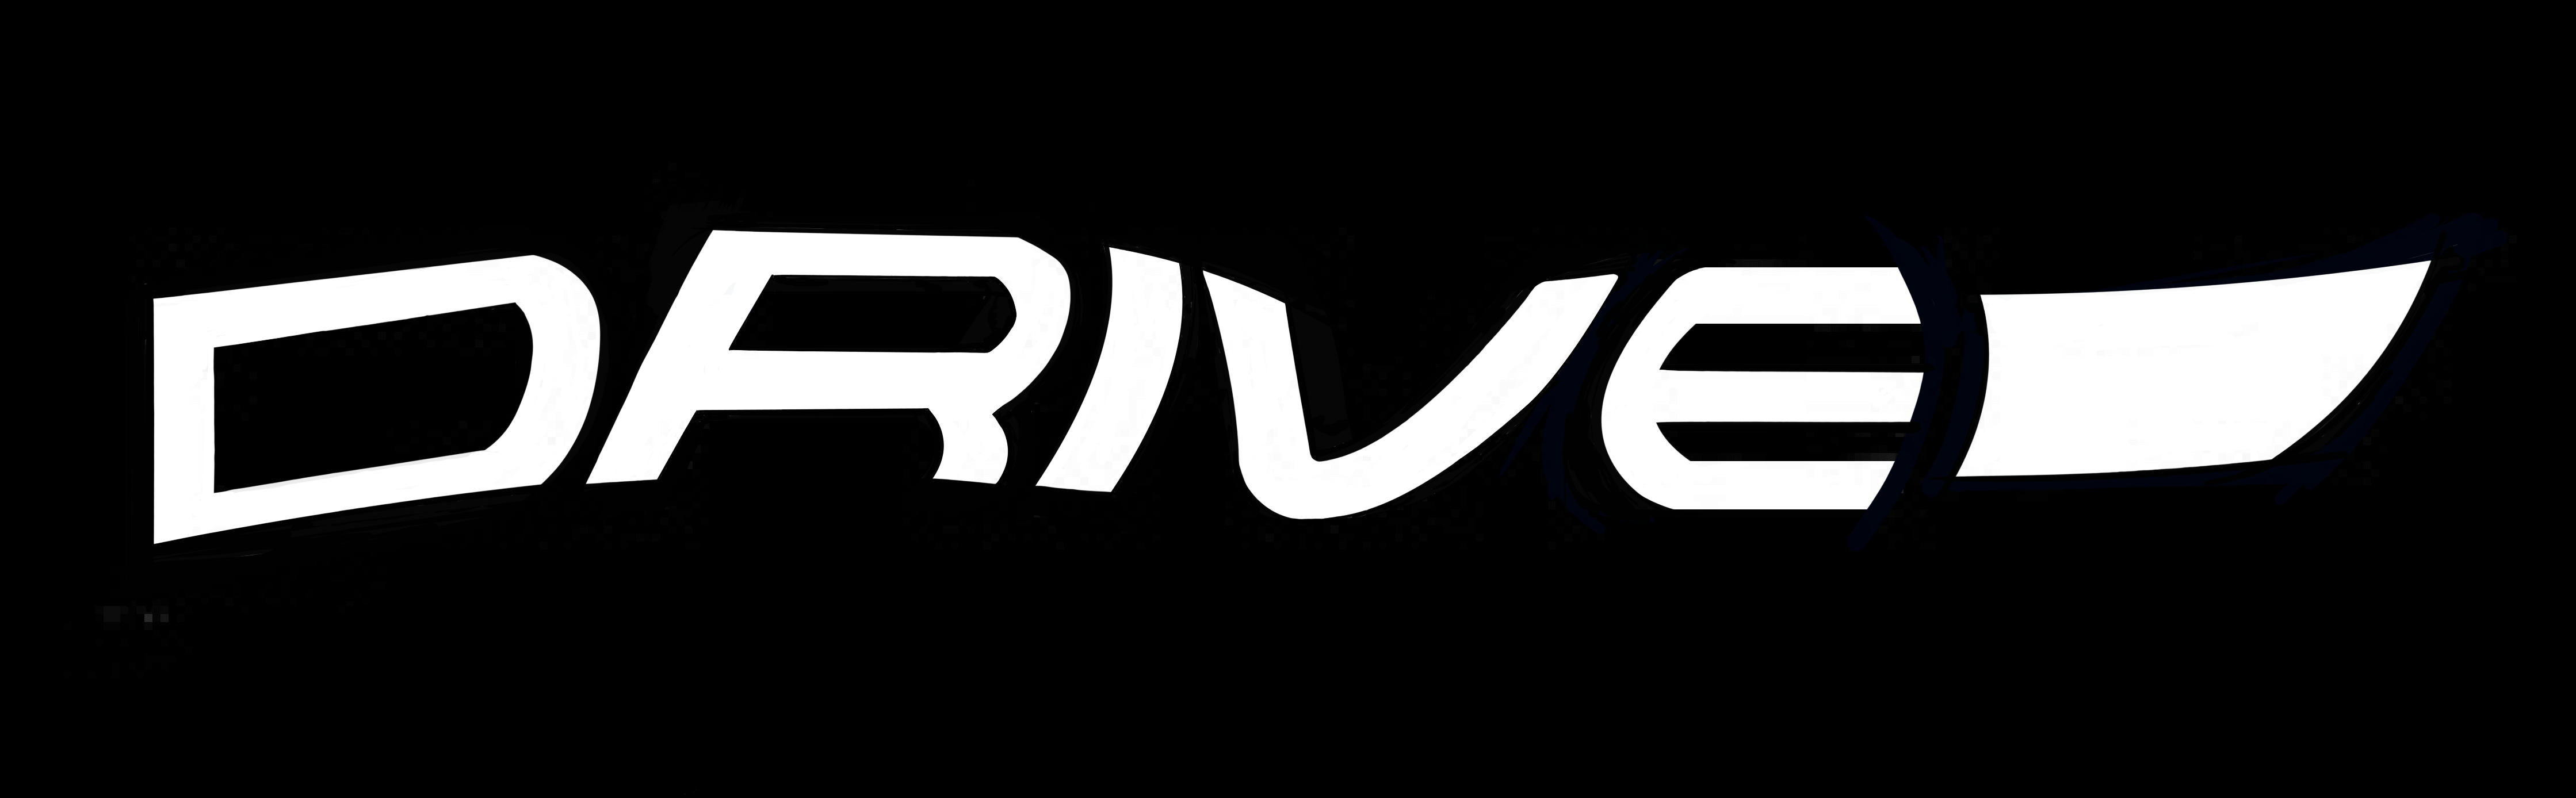 Drive Bikes logo